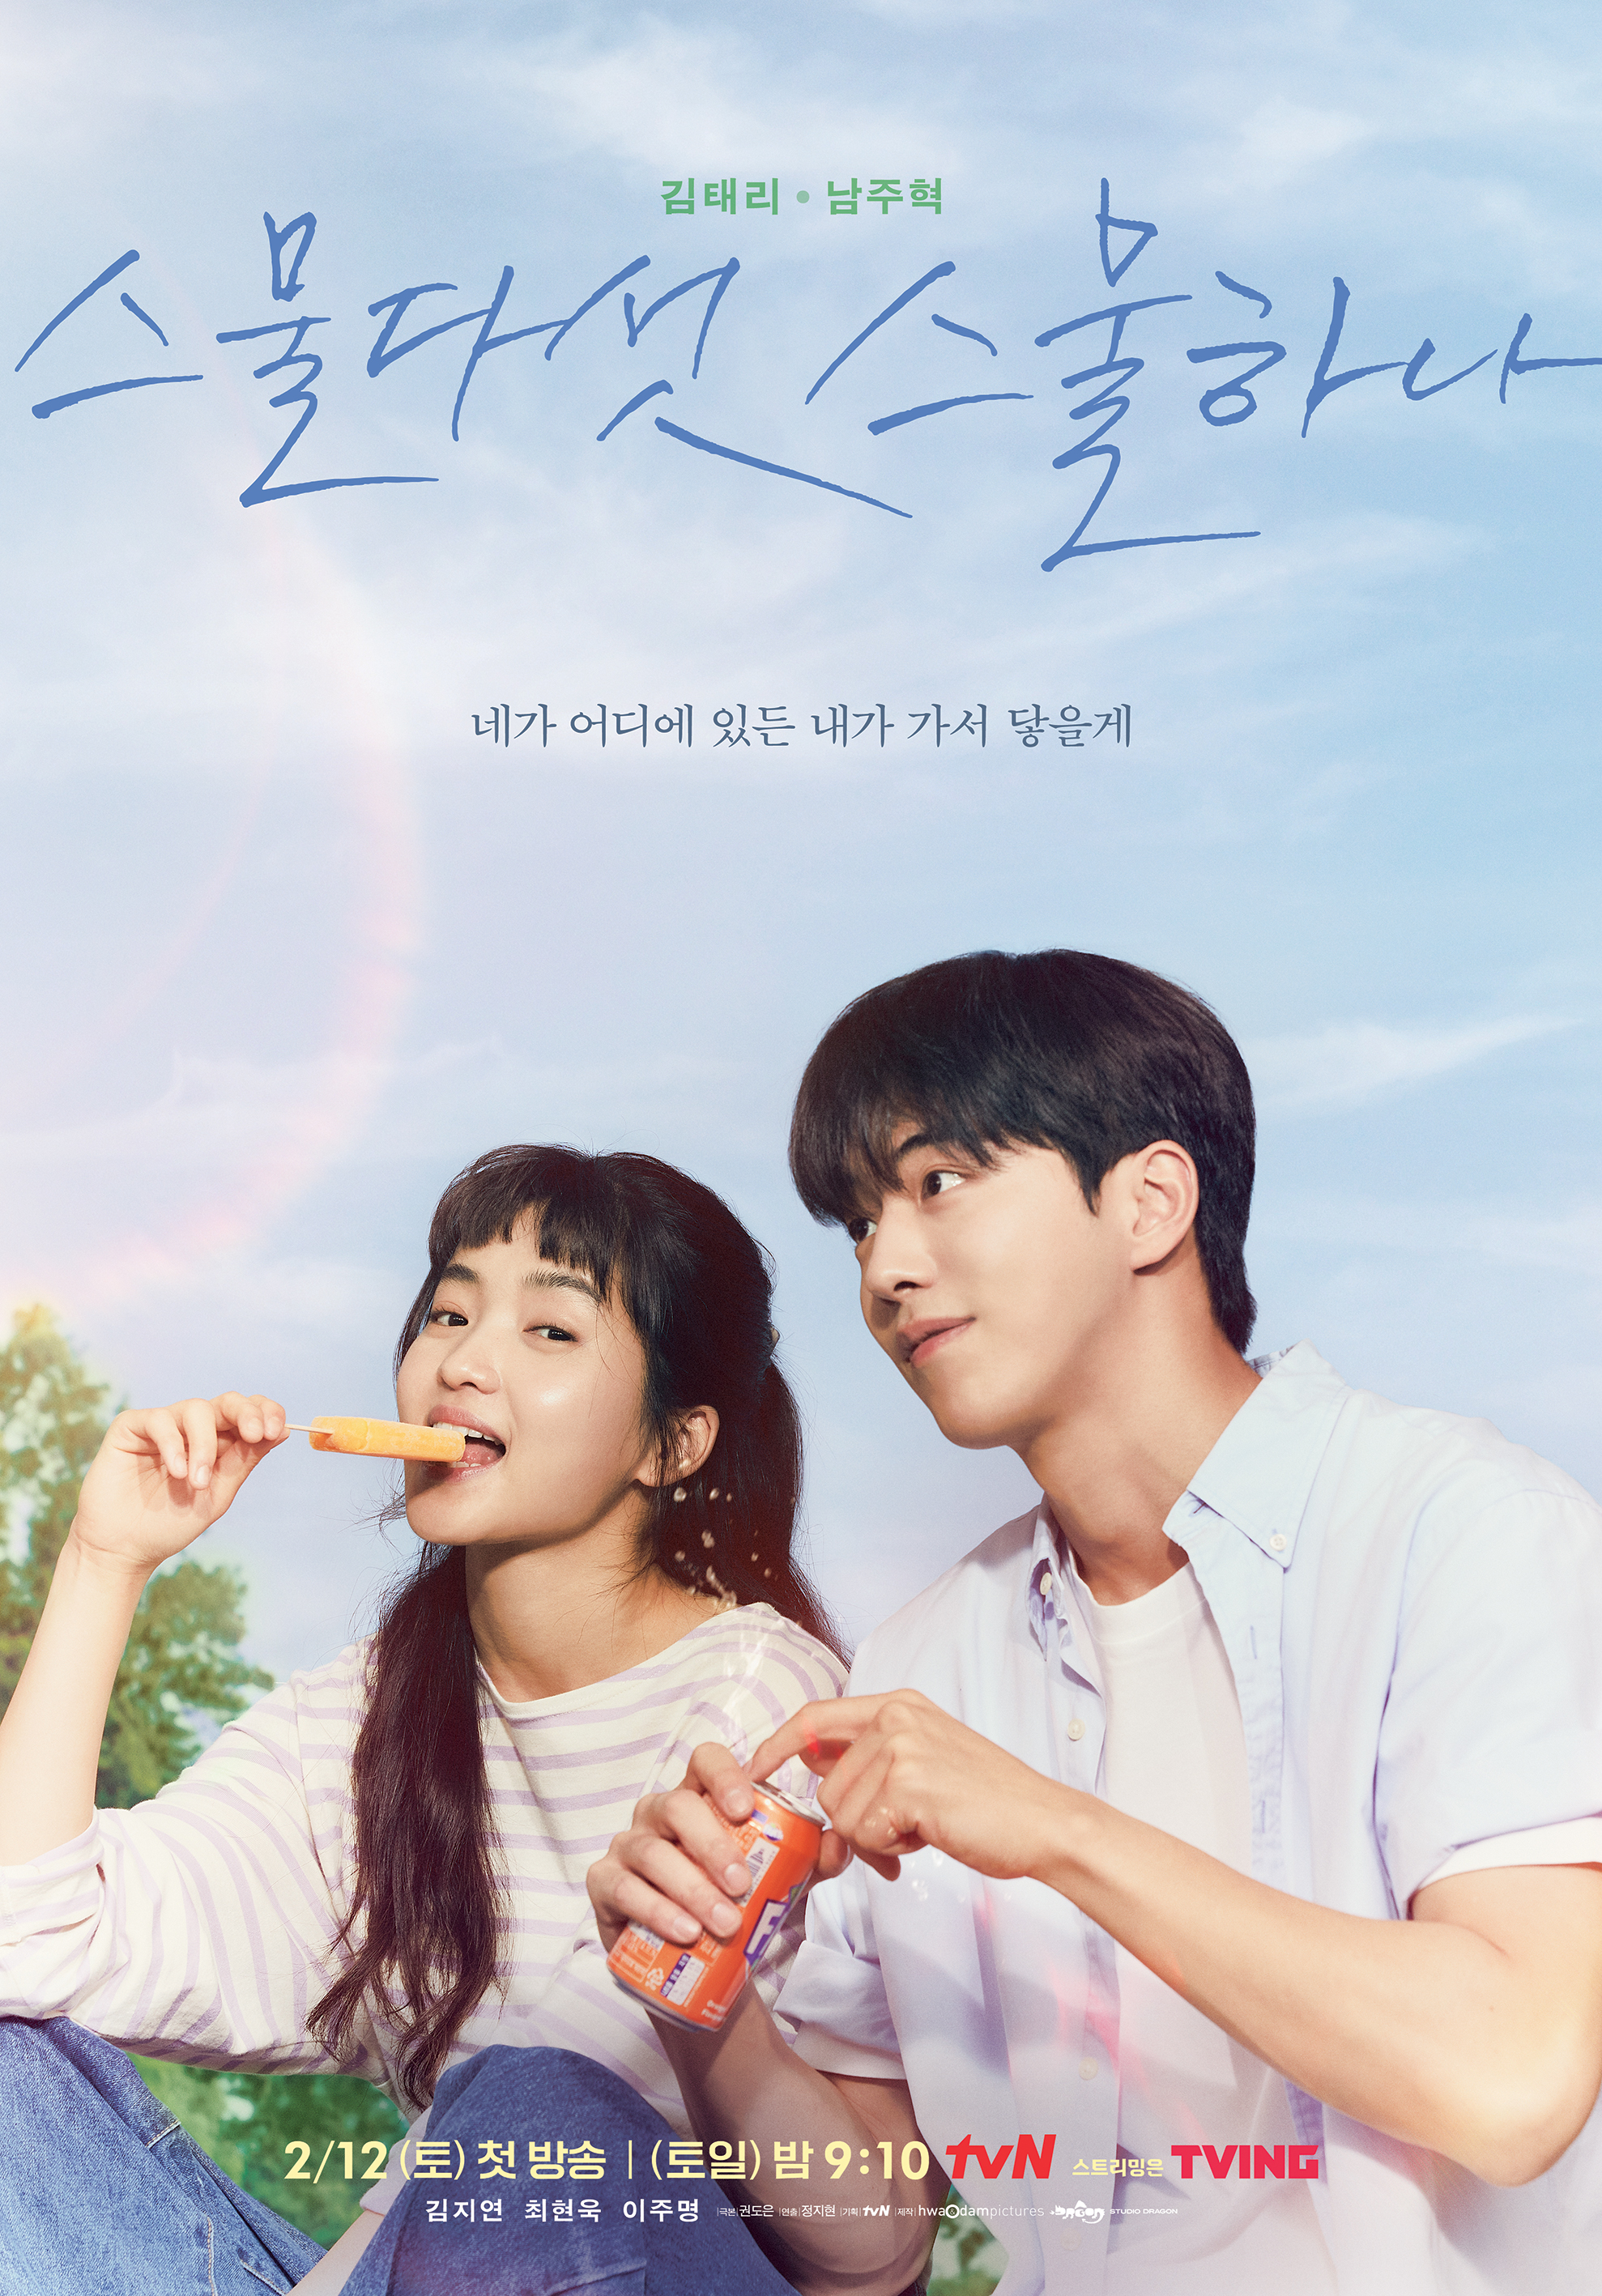 드라마 리뷰(Drama Review): tvN 토일드라마 '스물다섯 스물하나(2521, Twenty-five, Twenty-one)' 